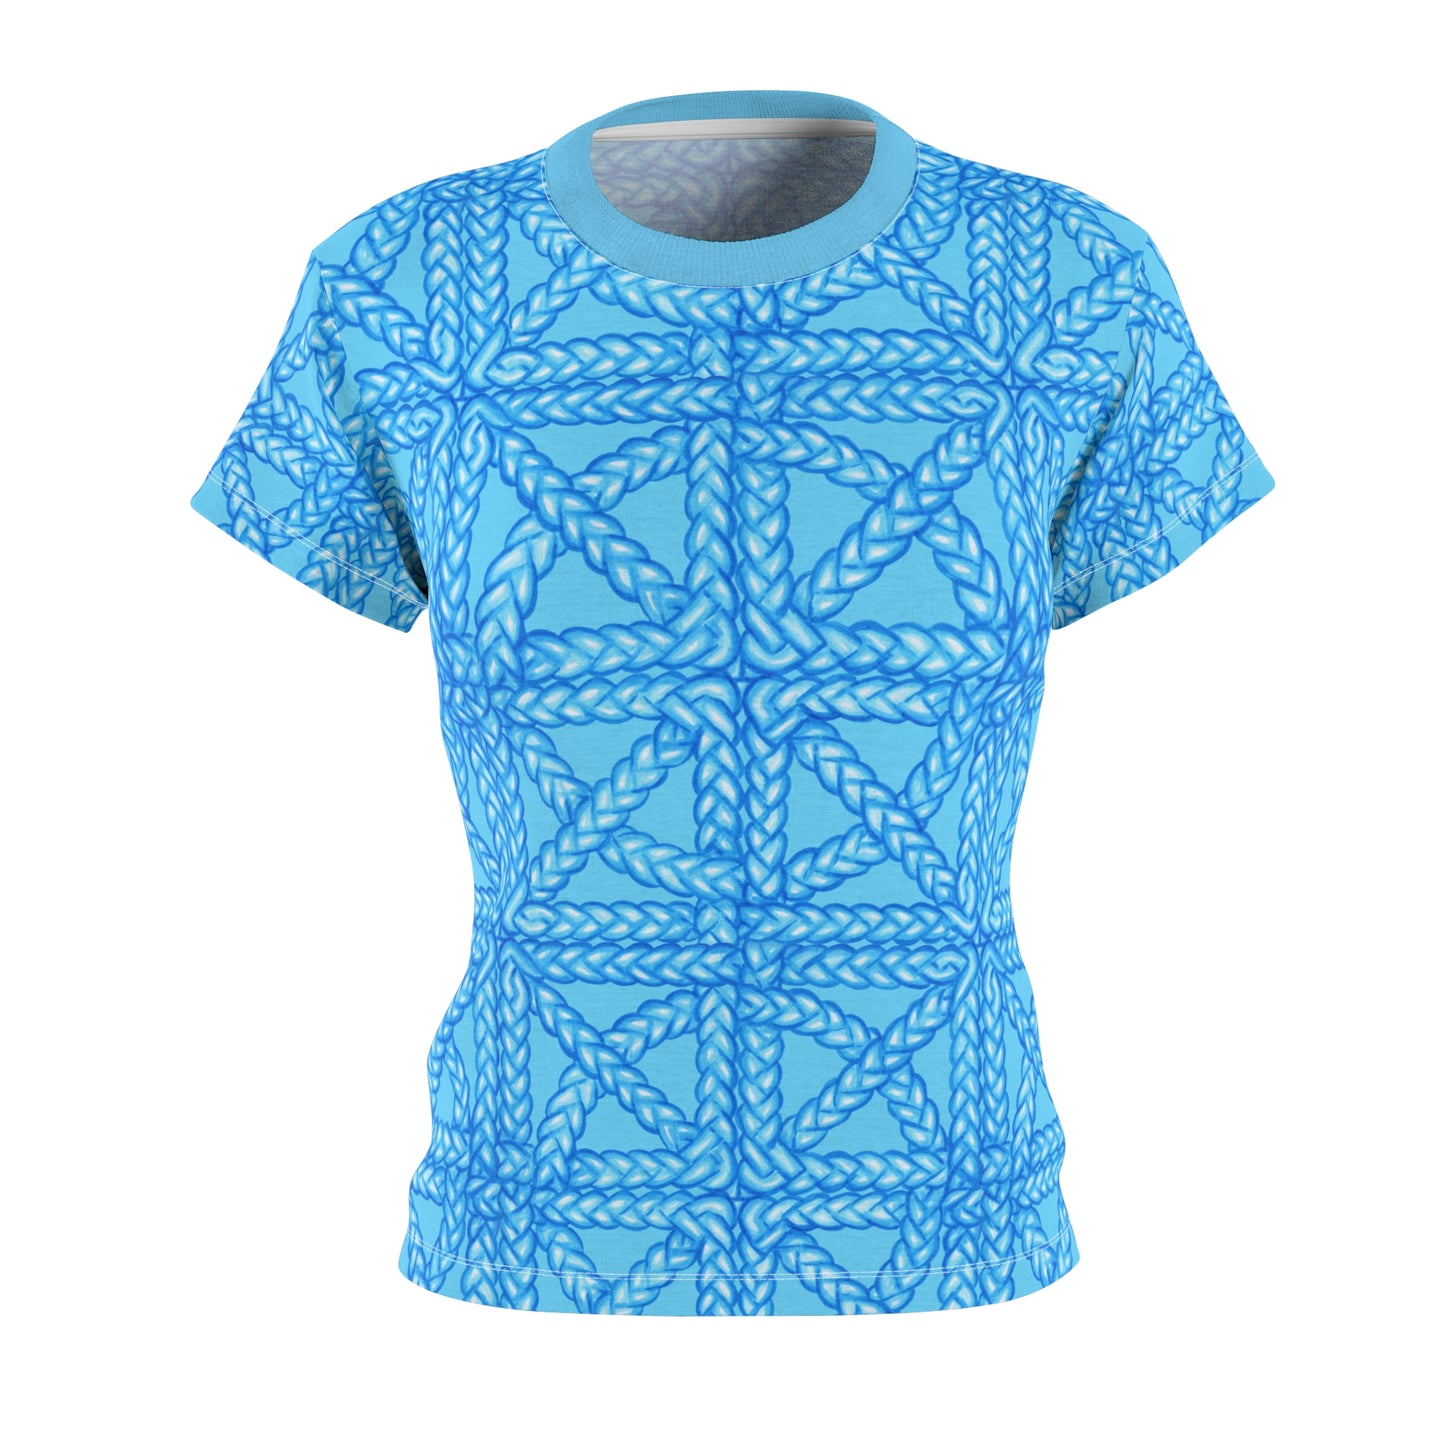 Women's Blue All Over Print T-shirt